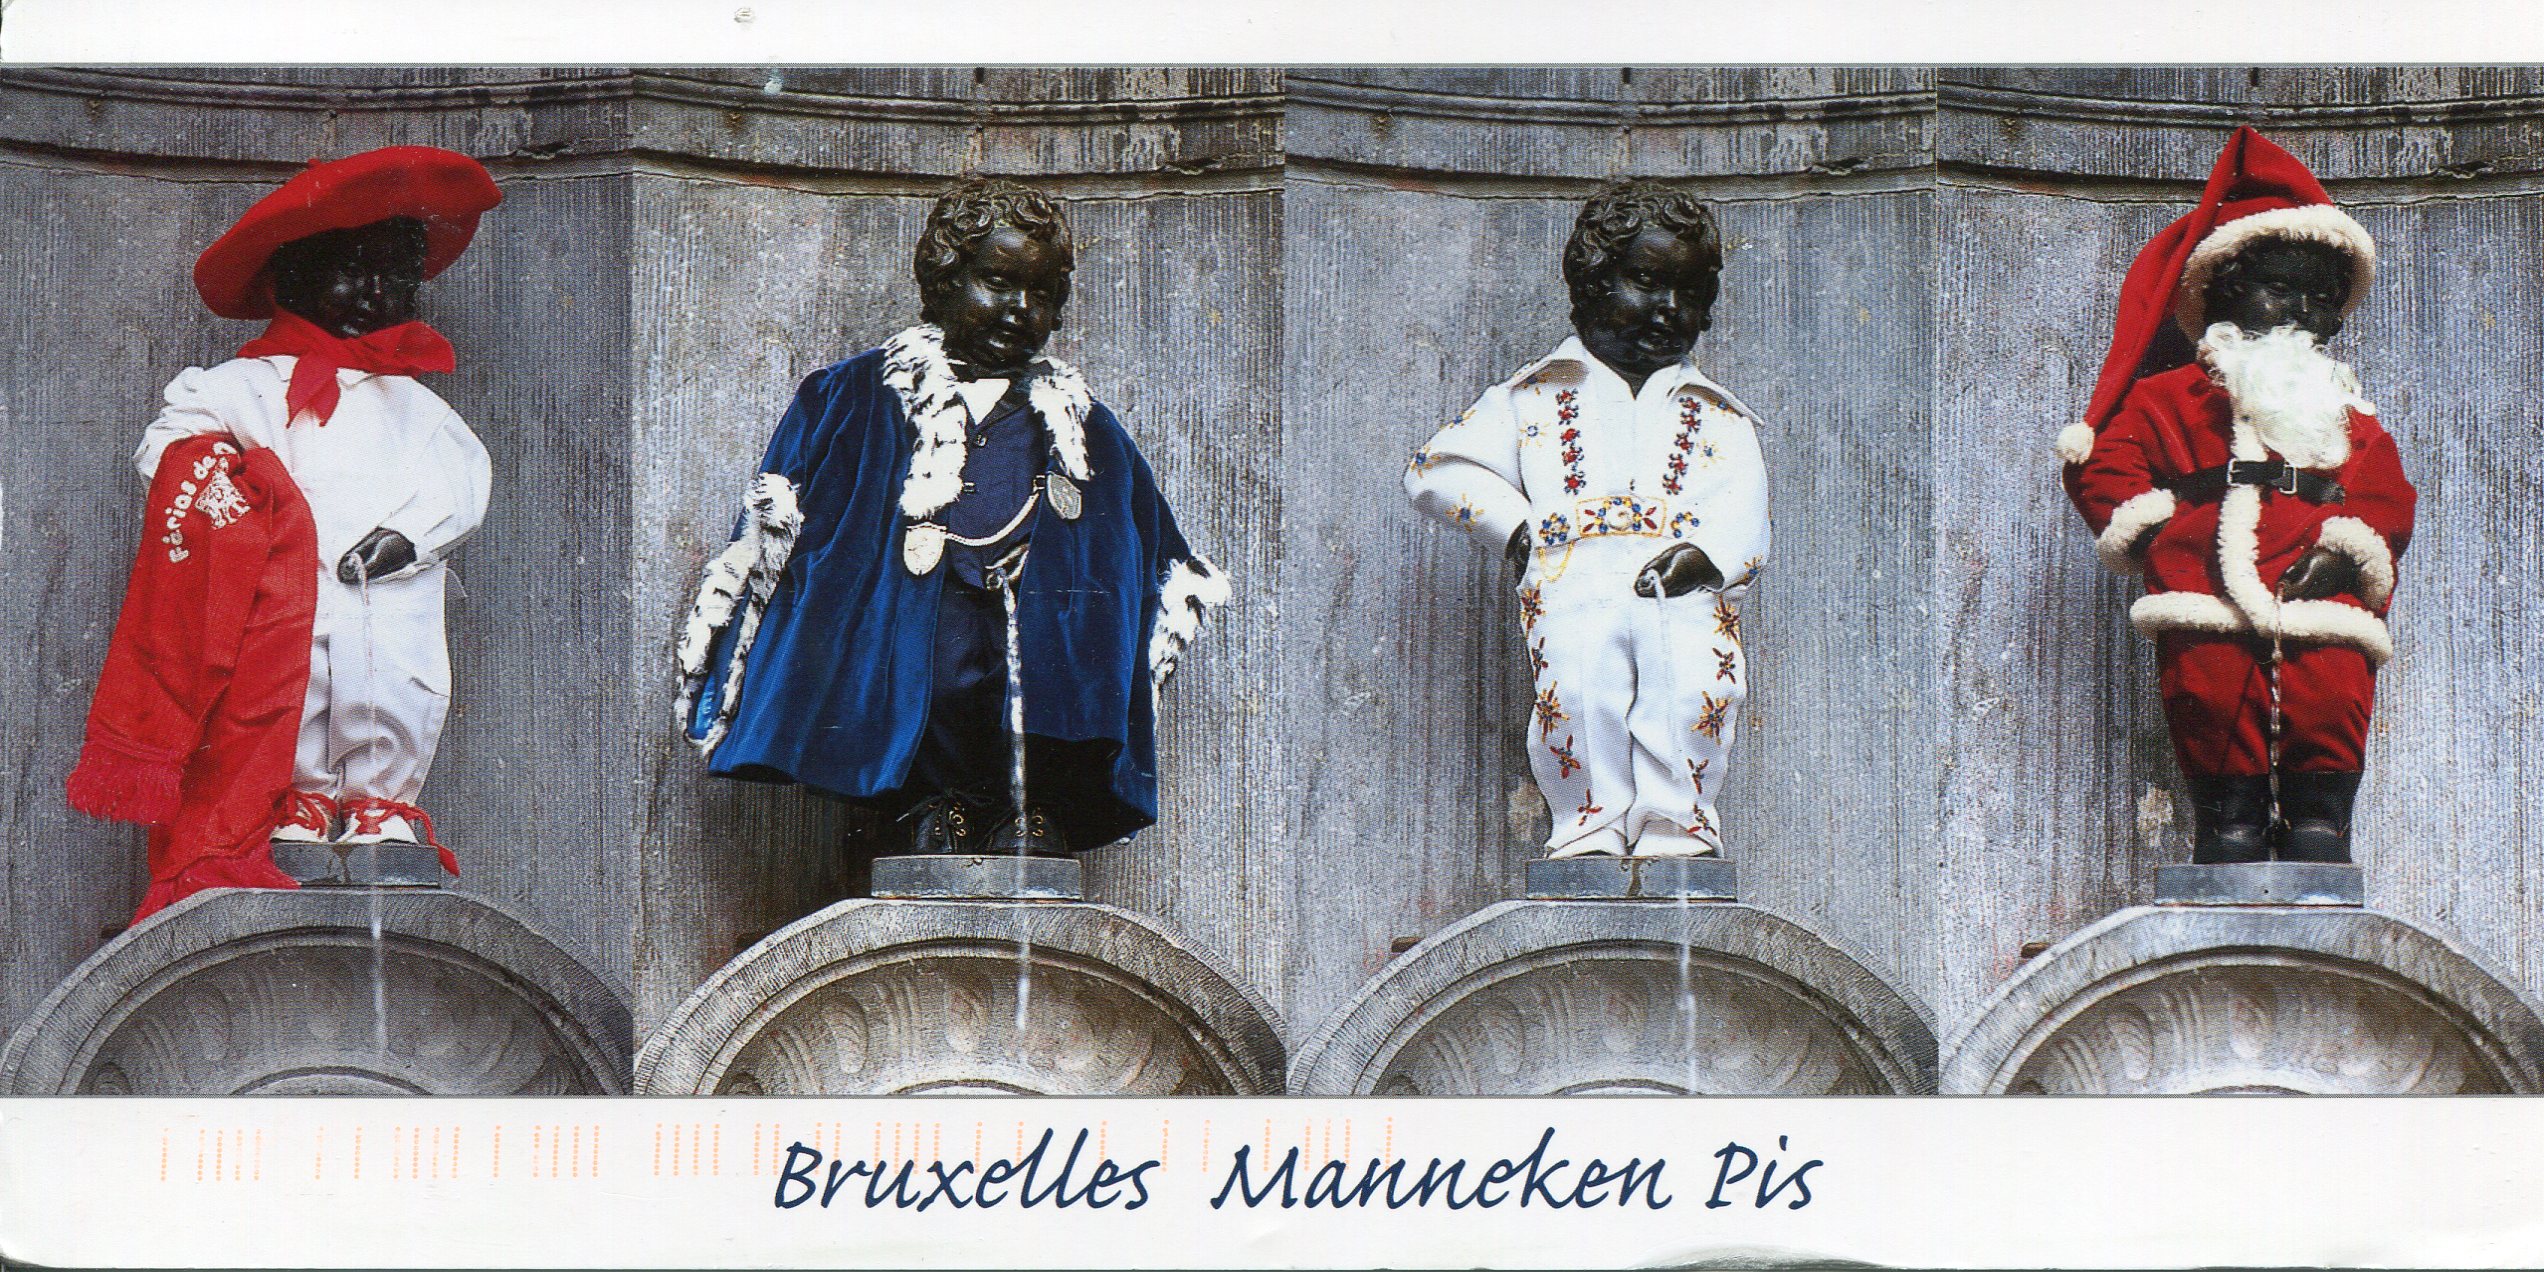 Bức tượng Manneken Pis biến hóa qua trang phục khác nhau